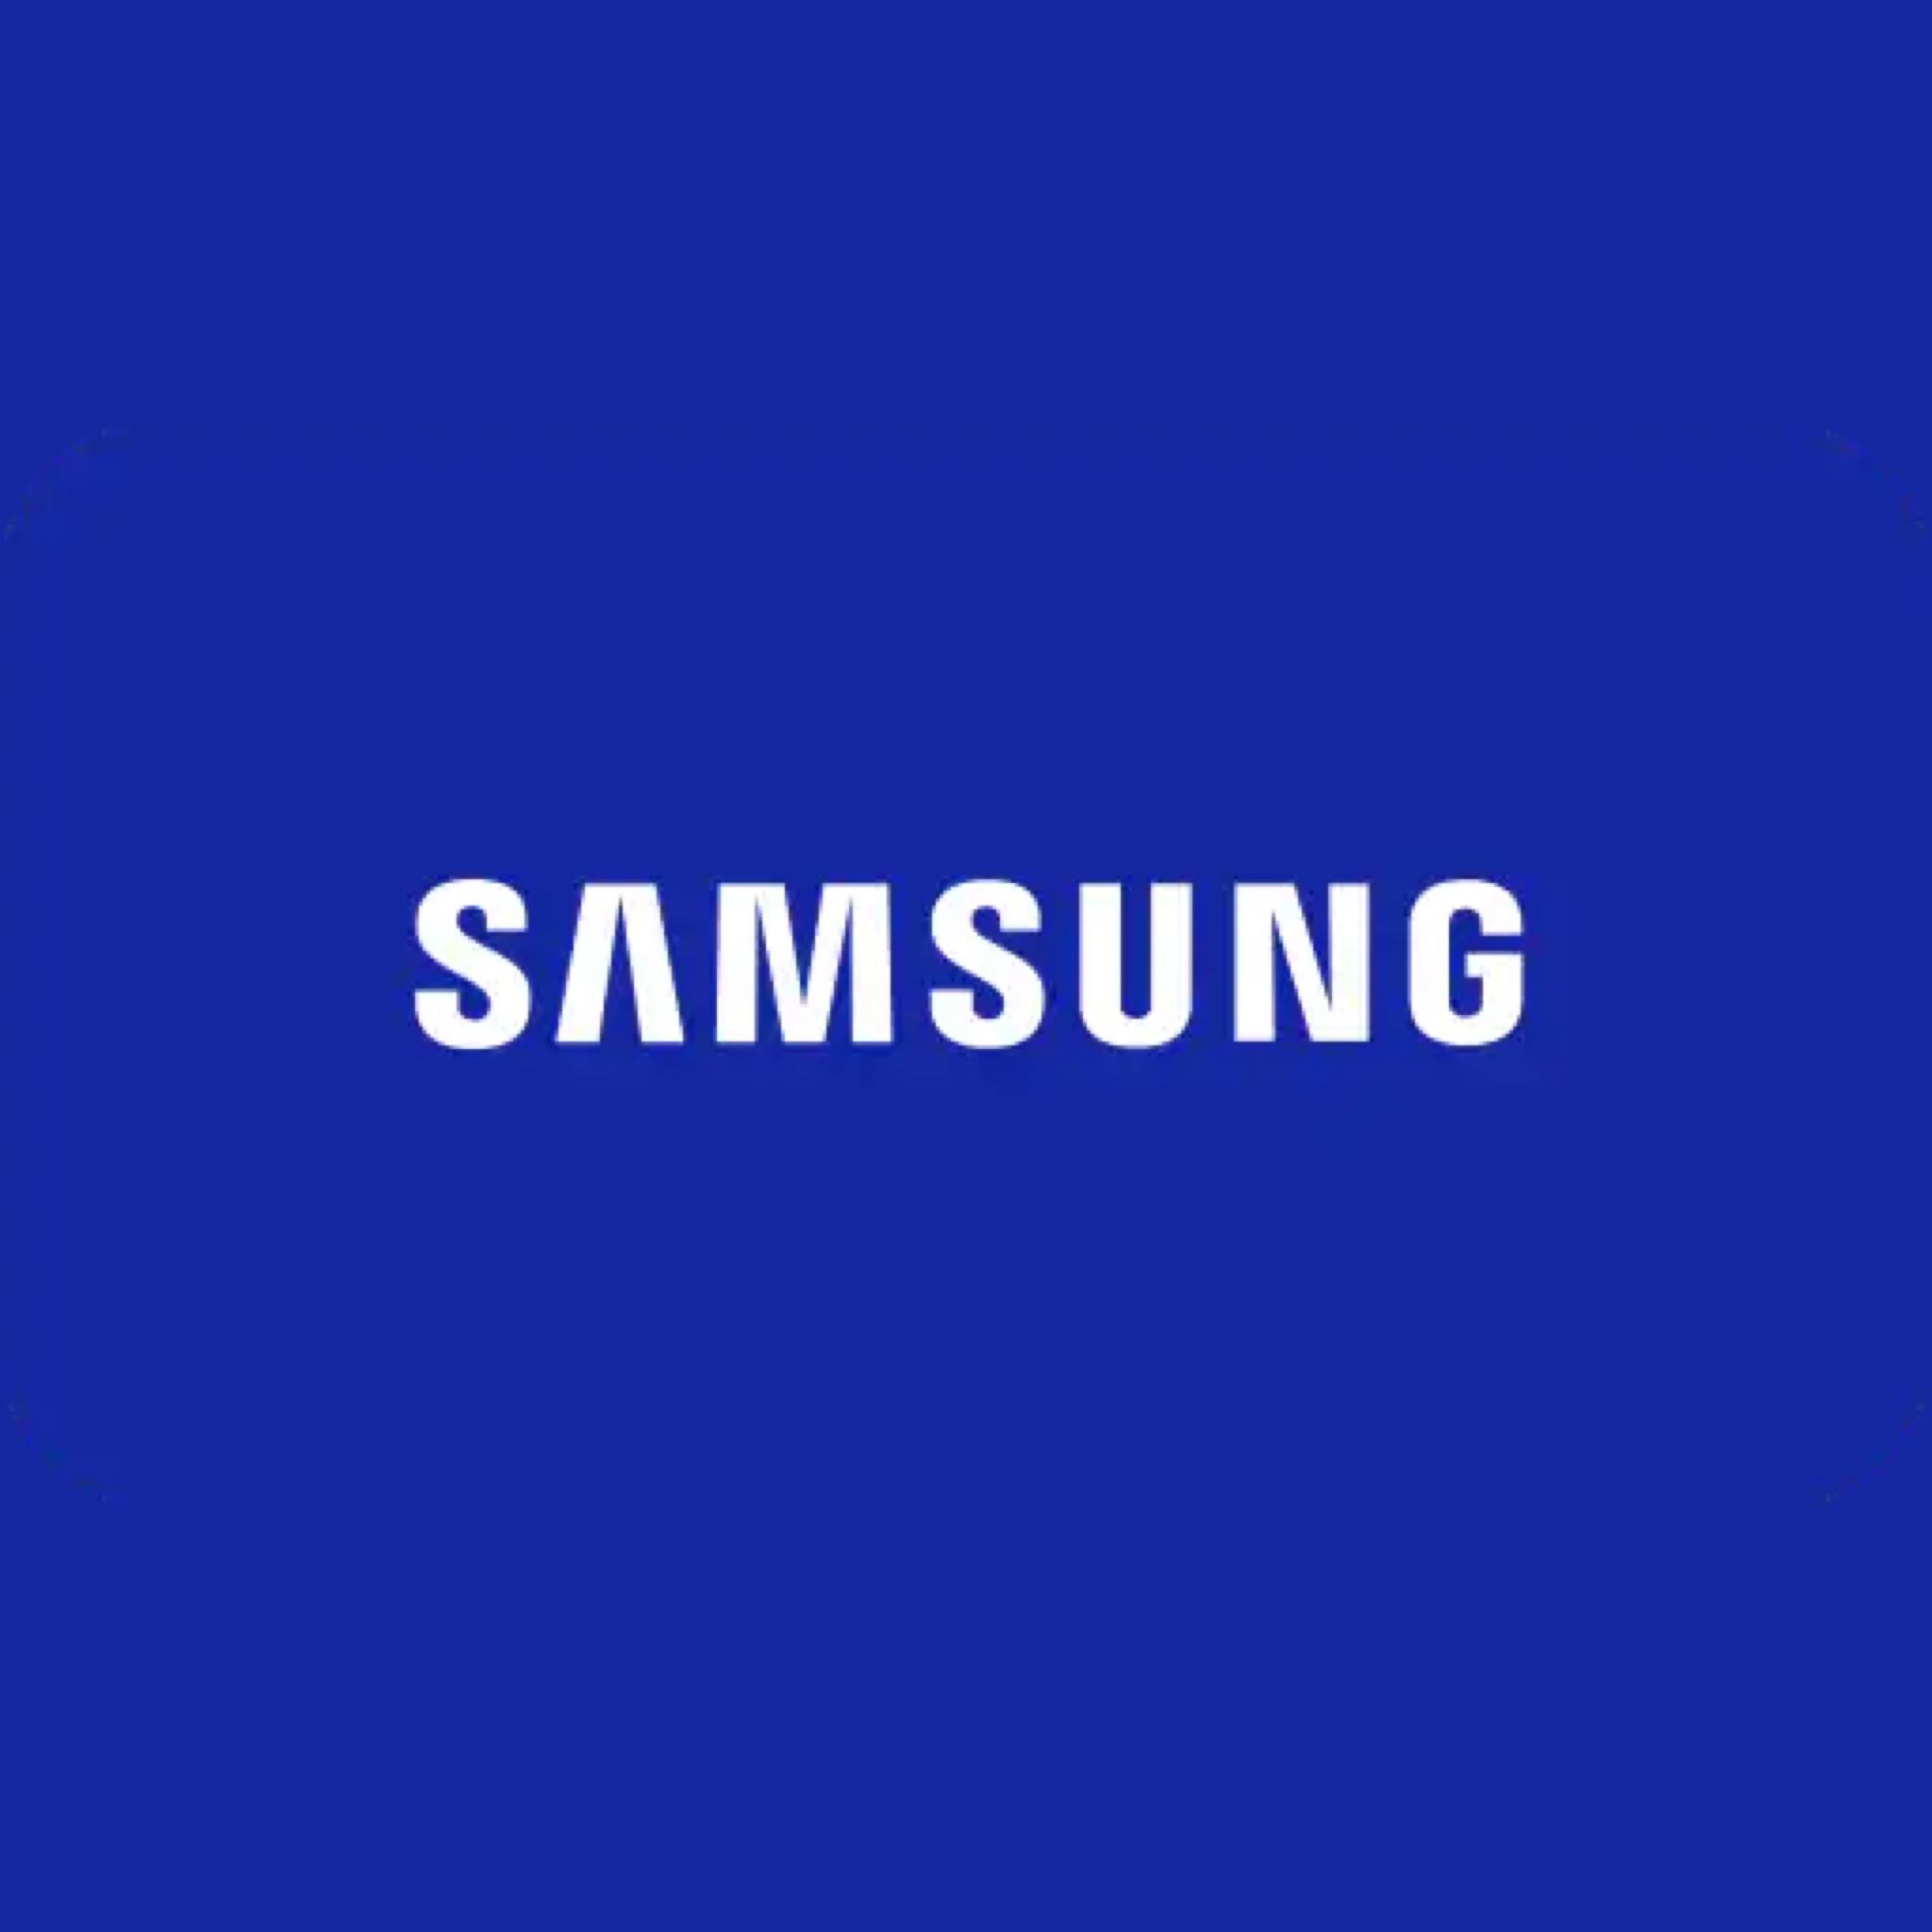 United States Altered State Productions ajansı, Samsung için, dijital pazarlamalarını, SEO ve işlerini büyütmesi konusunda yardımcı oldu